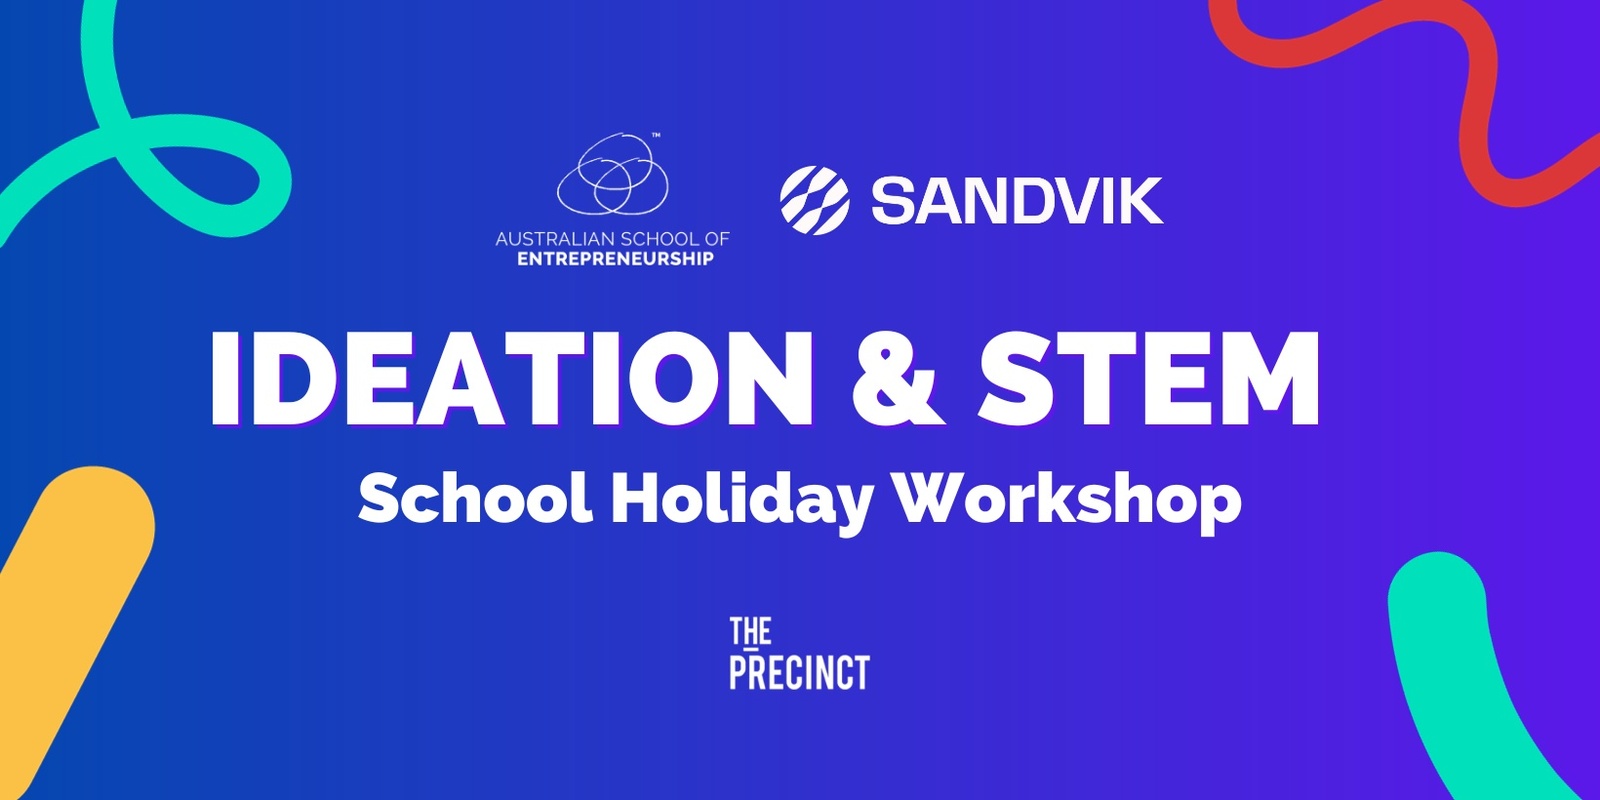 Banner image for Ideation & STEM School Holiday Workshop Presented by Sandvik